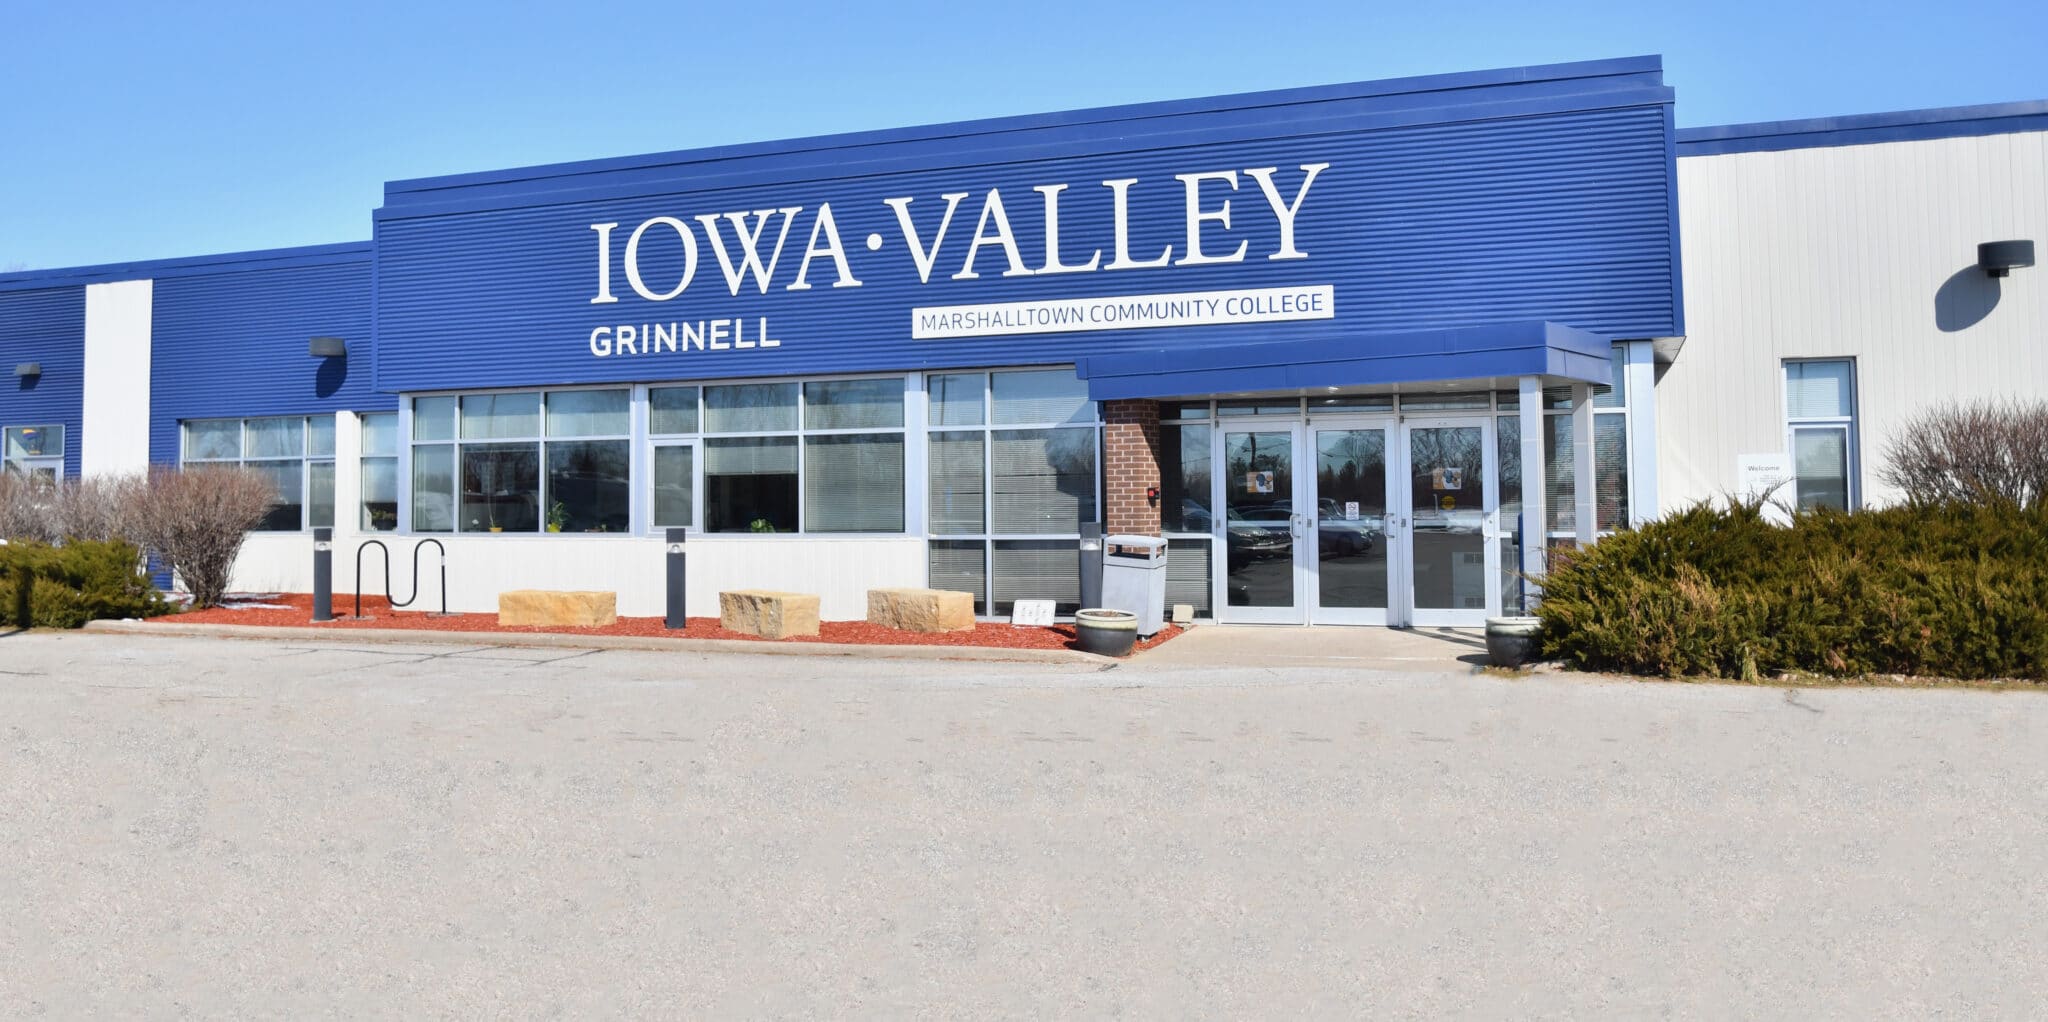 Iowa Valley Grinnell